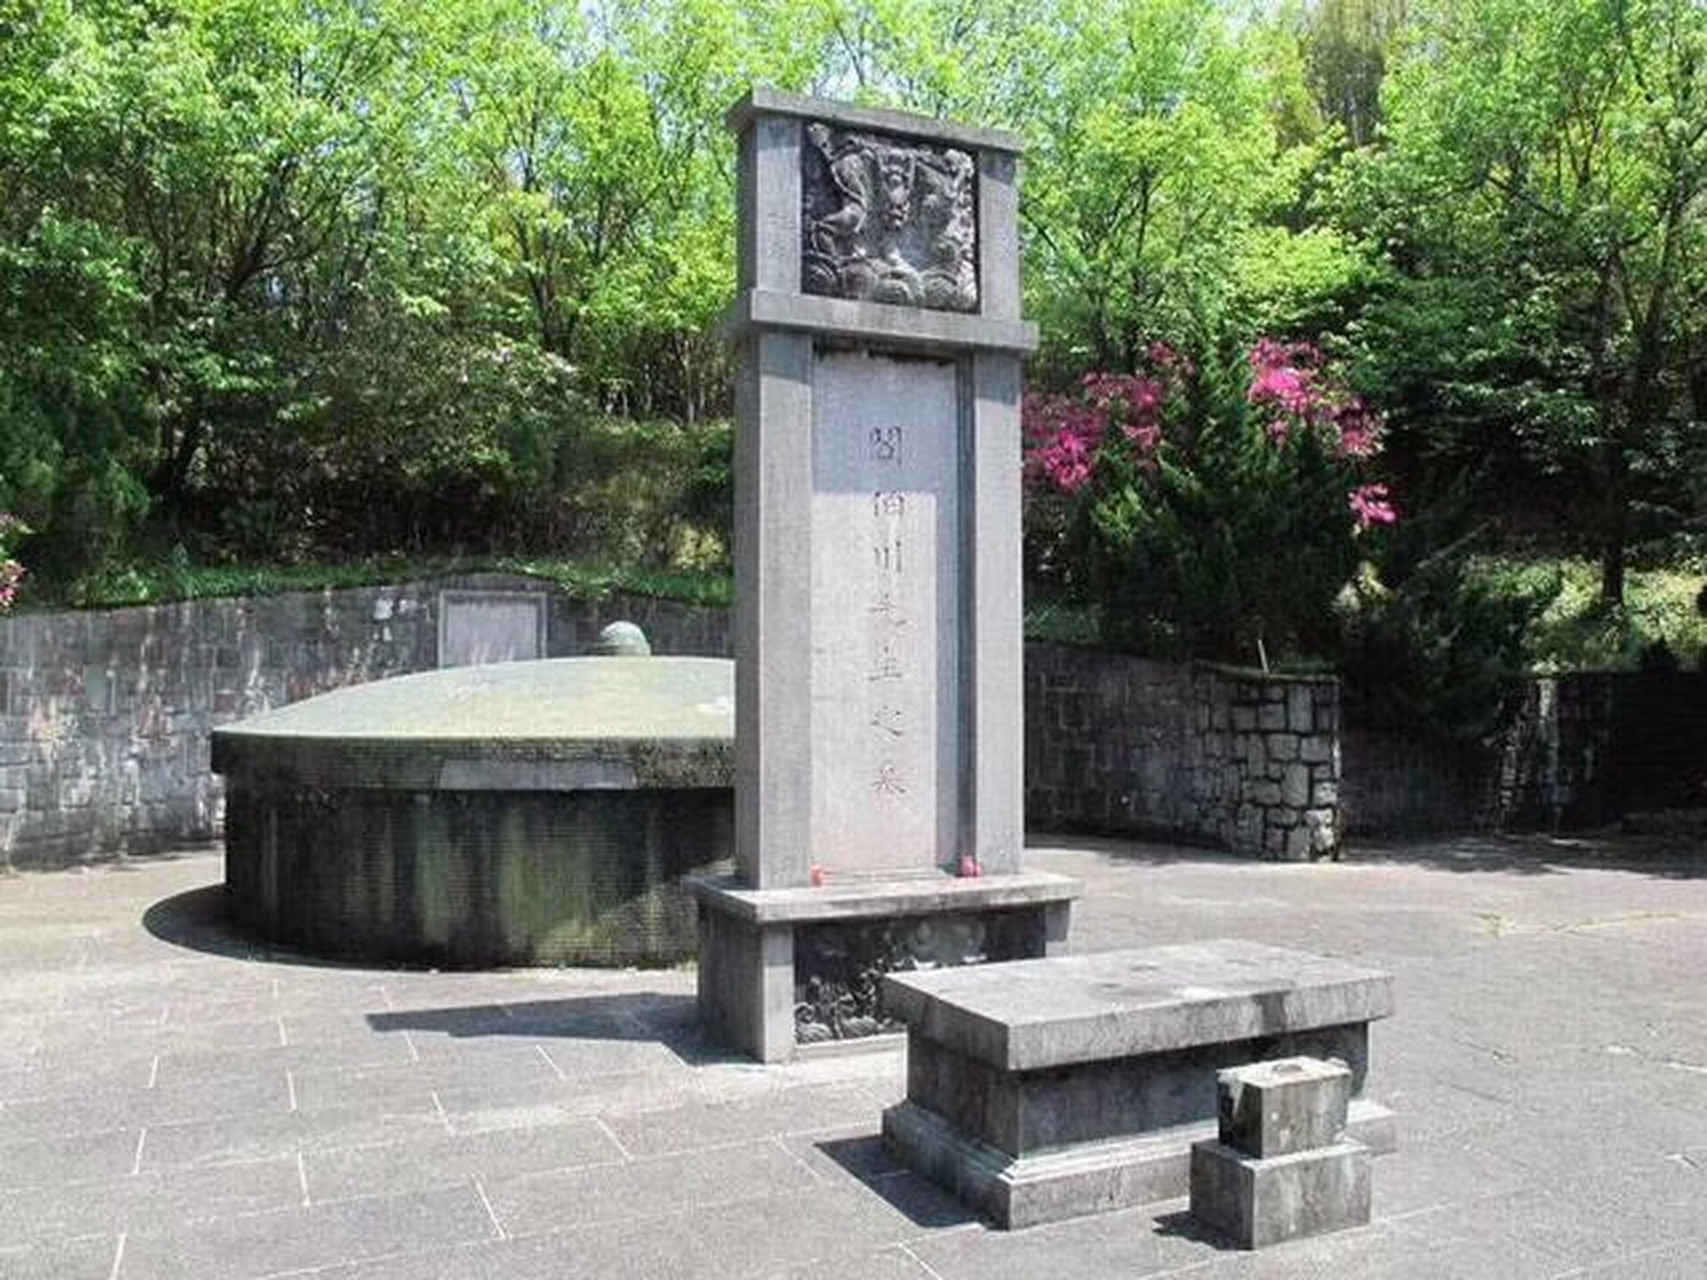 台湾阎锡山墓地,墓碑朝向山西老家,图7是为他守墓至今的老部下.